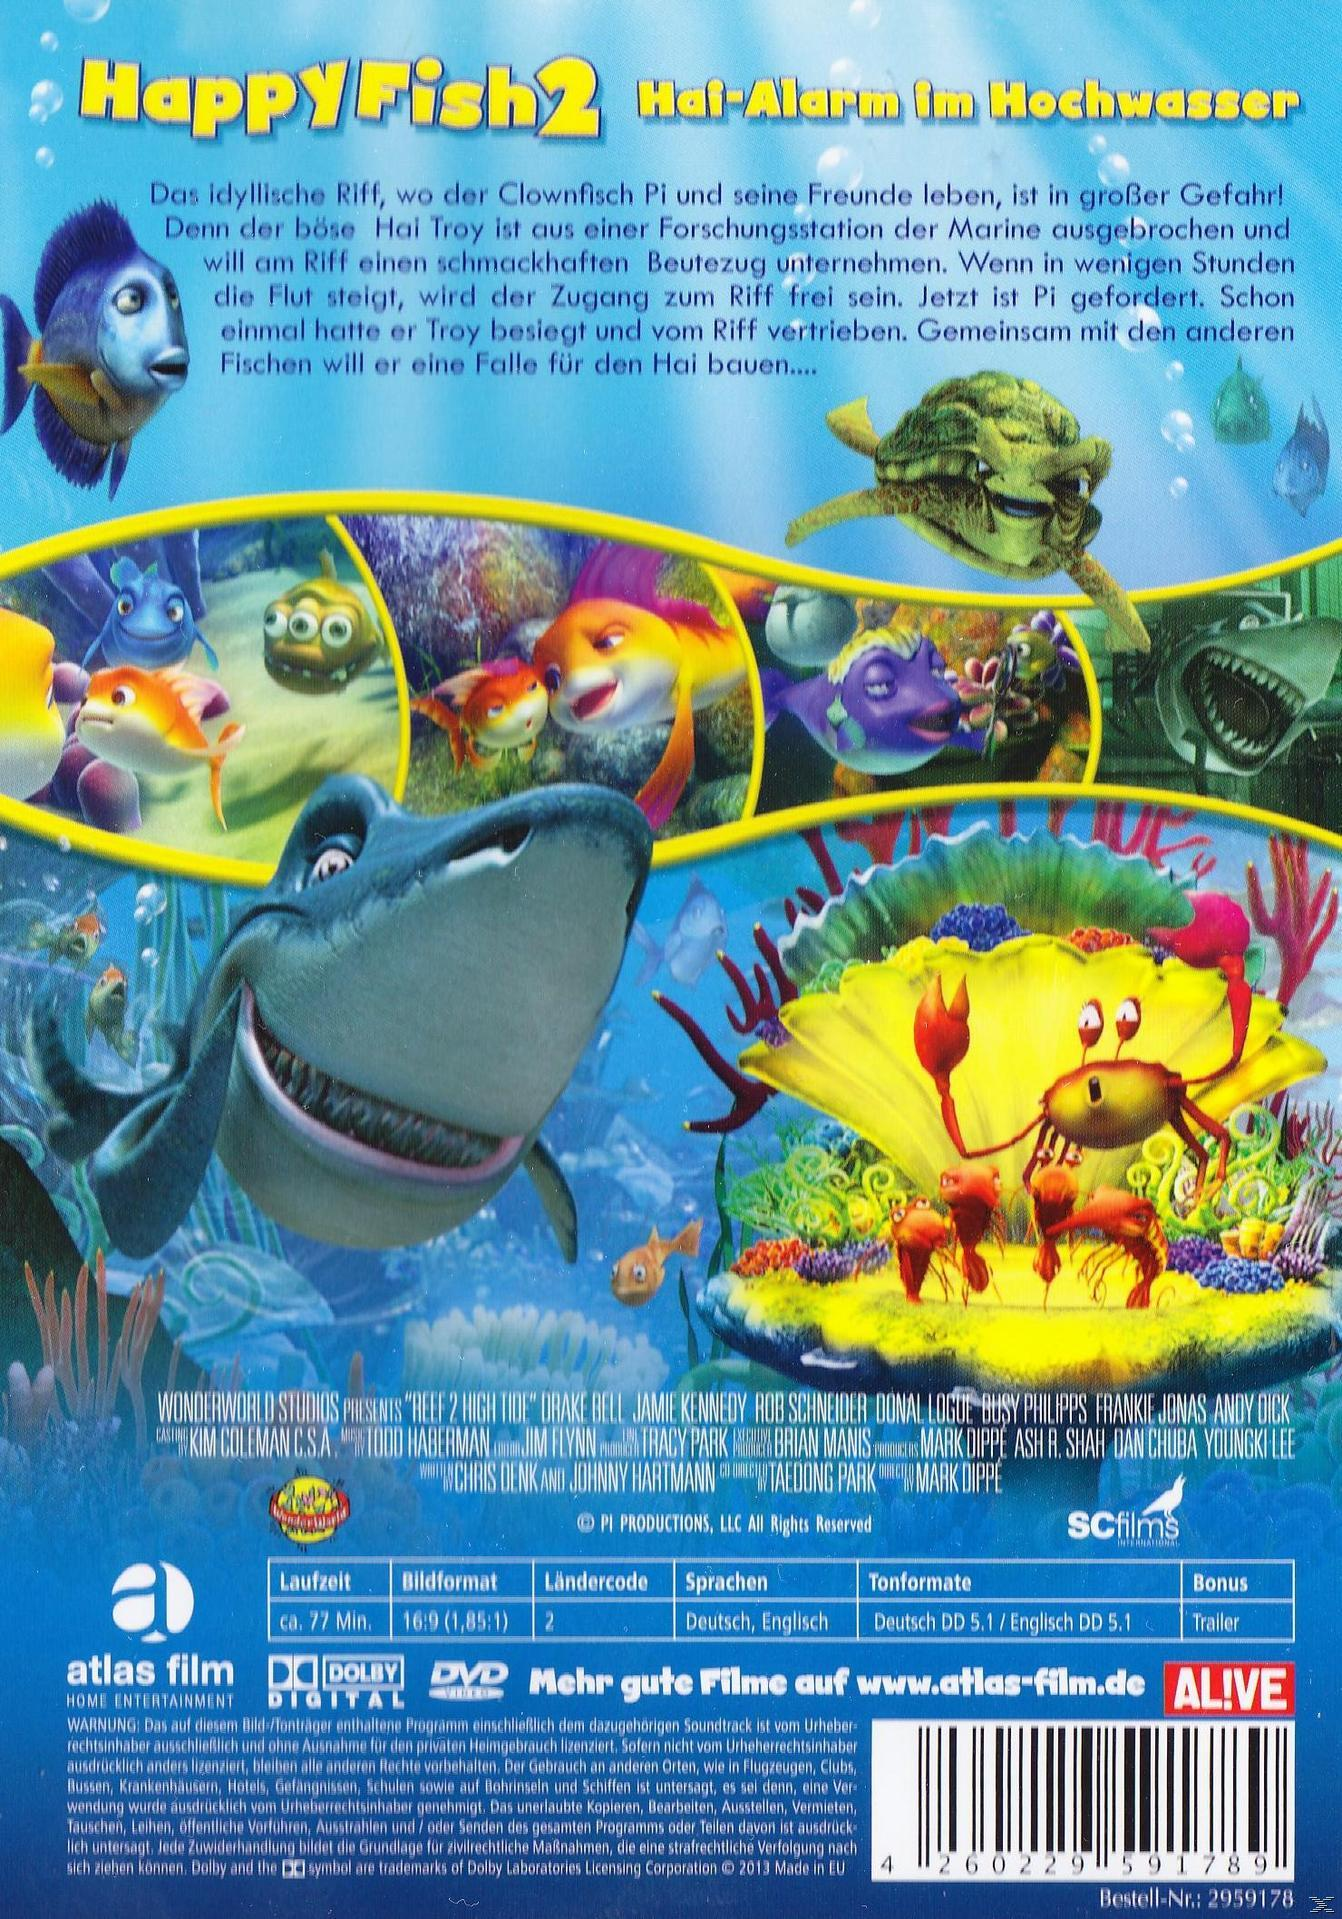 Happy Fish 2 - Hochwasser Hai-Alarm DVD im